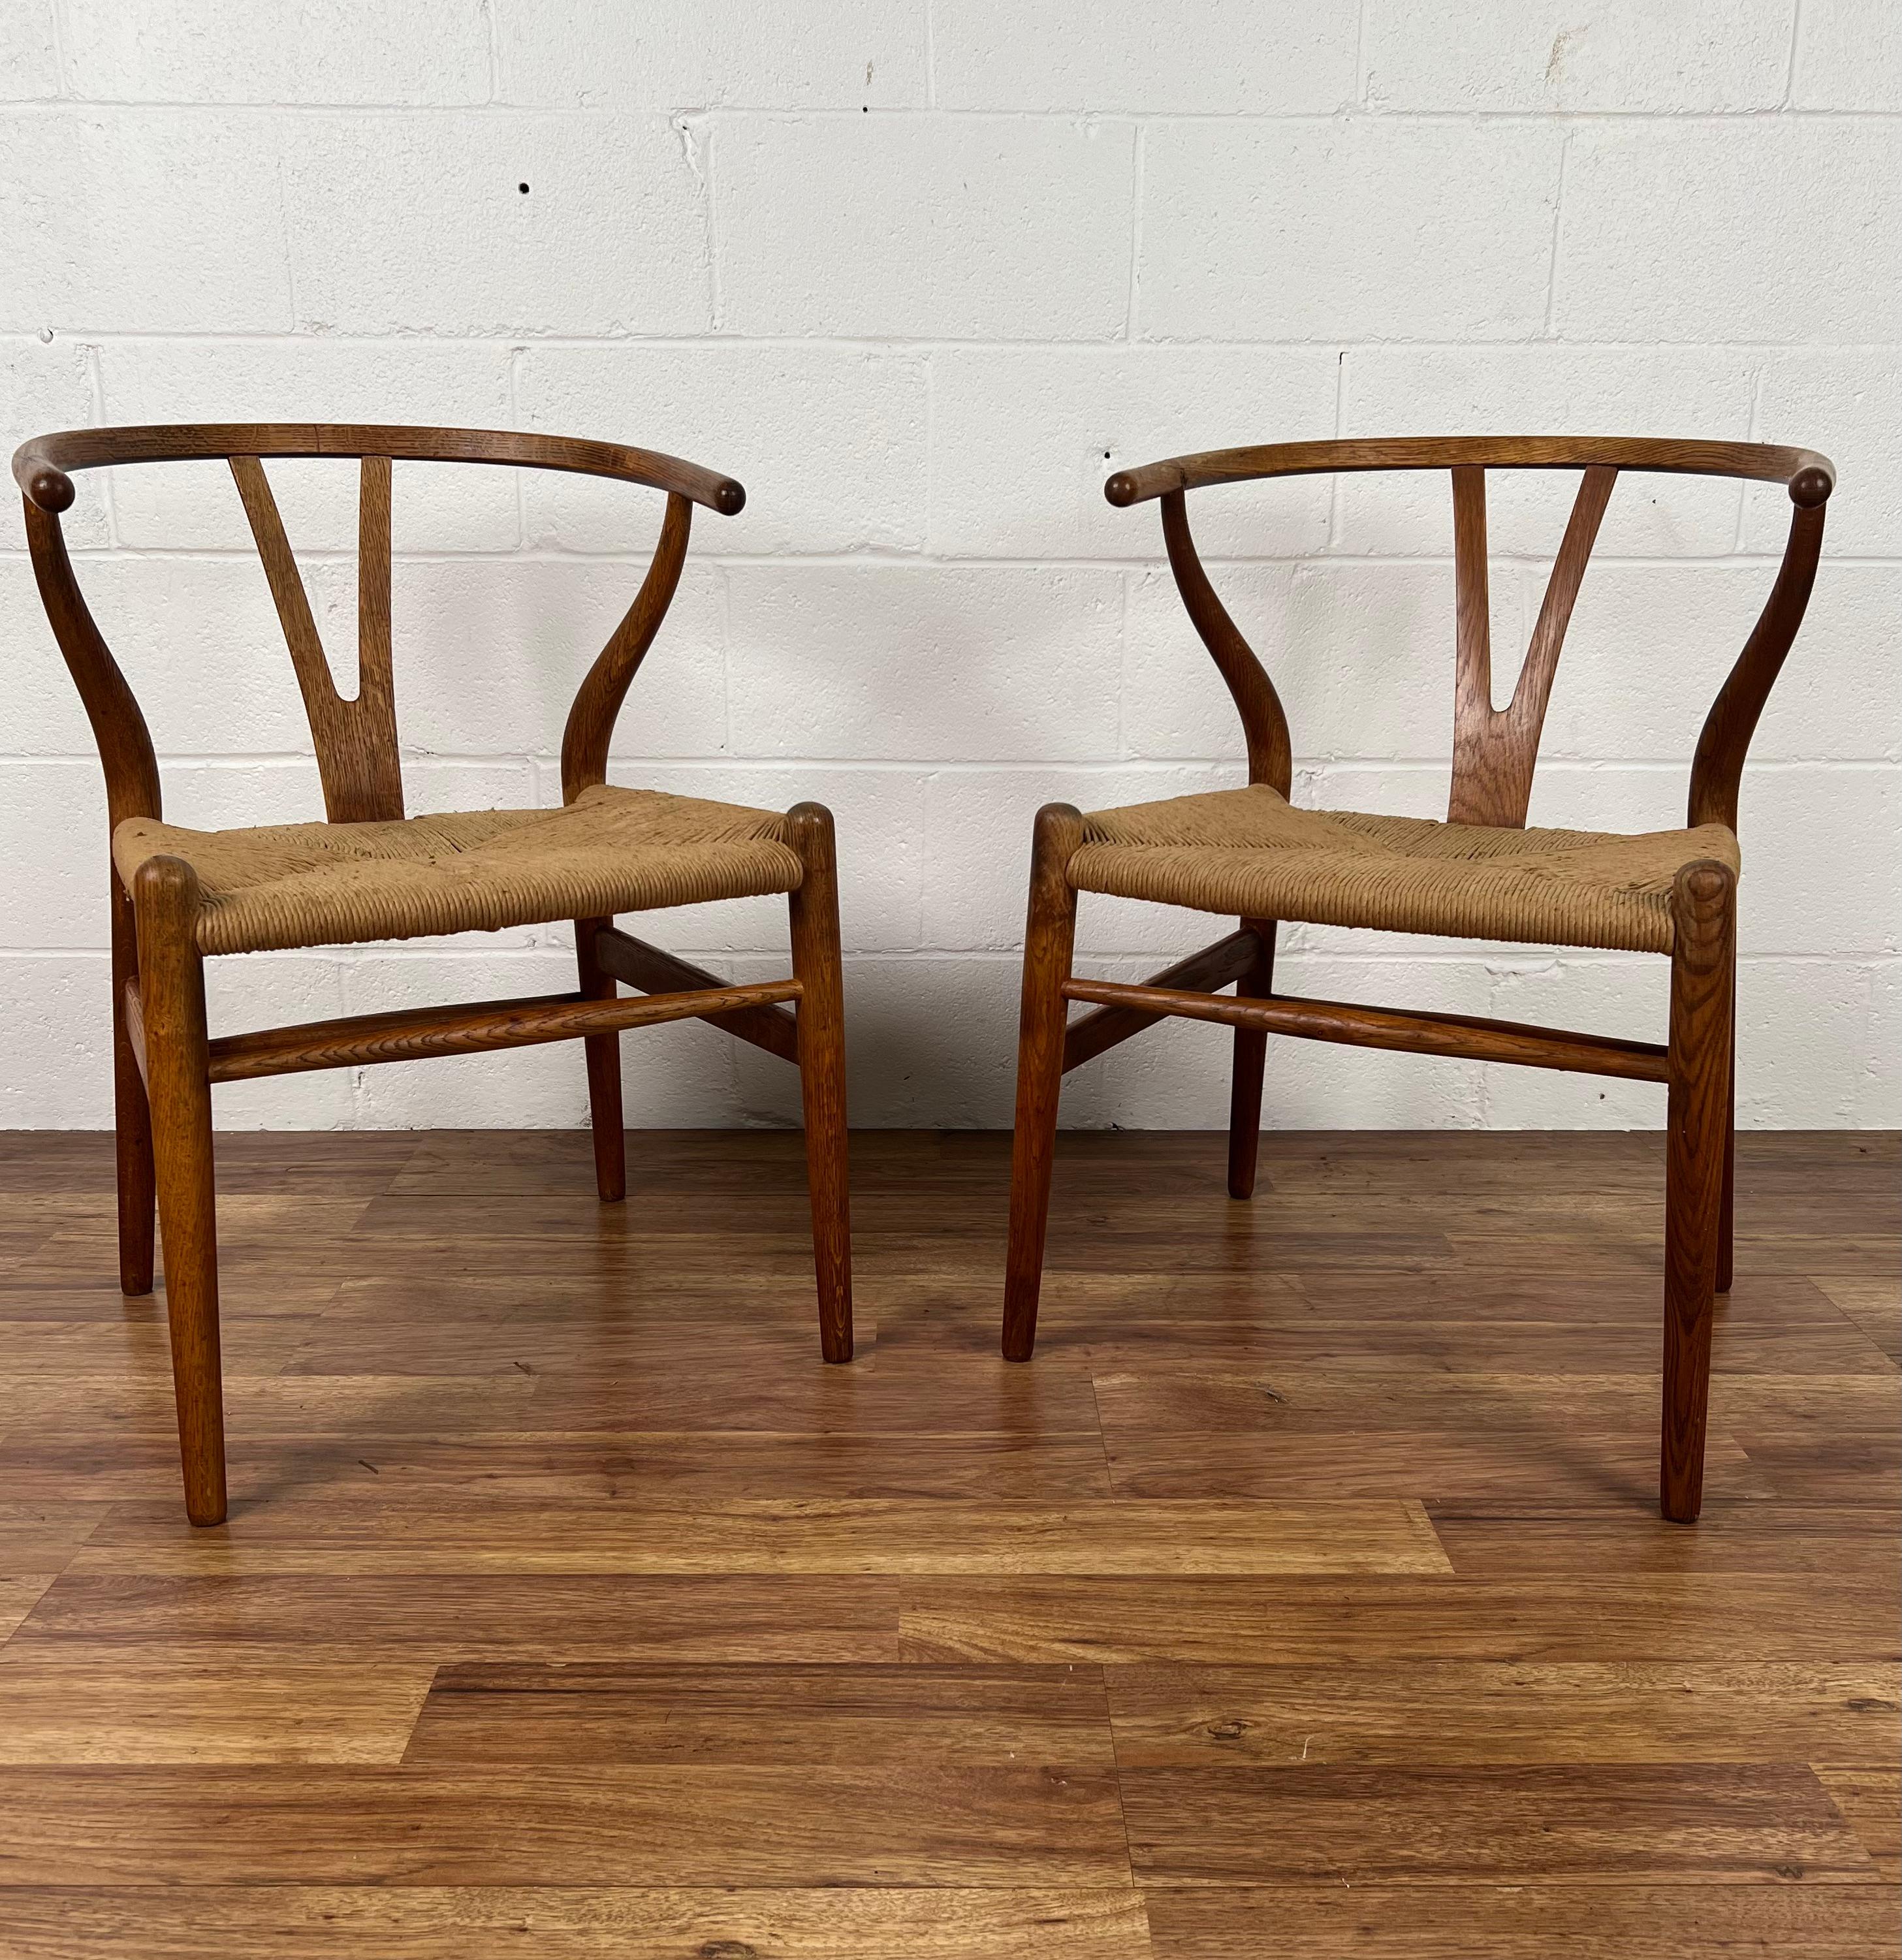 Nous vous proposons cette paire rare et originale de chaises à boudin CH24 de Hans J. Wegner. Ce sont les plus populaires de toutes les belles pièces réalisées par ce designer légendaire. Cette jolie paire a été fabriquée par les artisans qualifiés